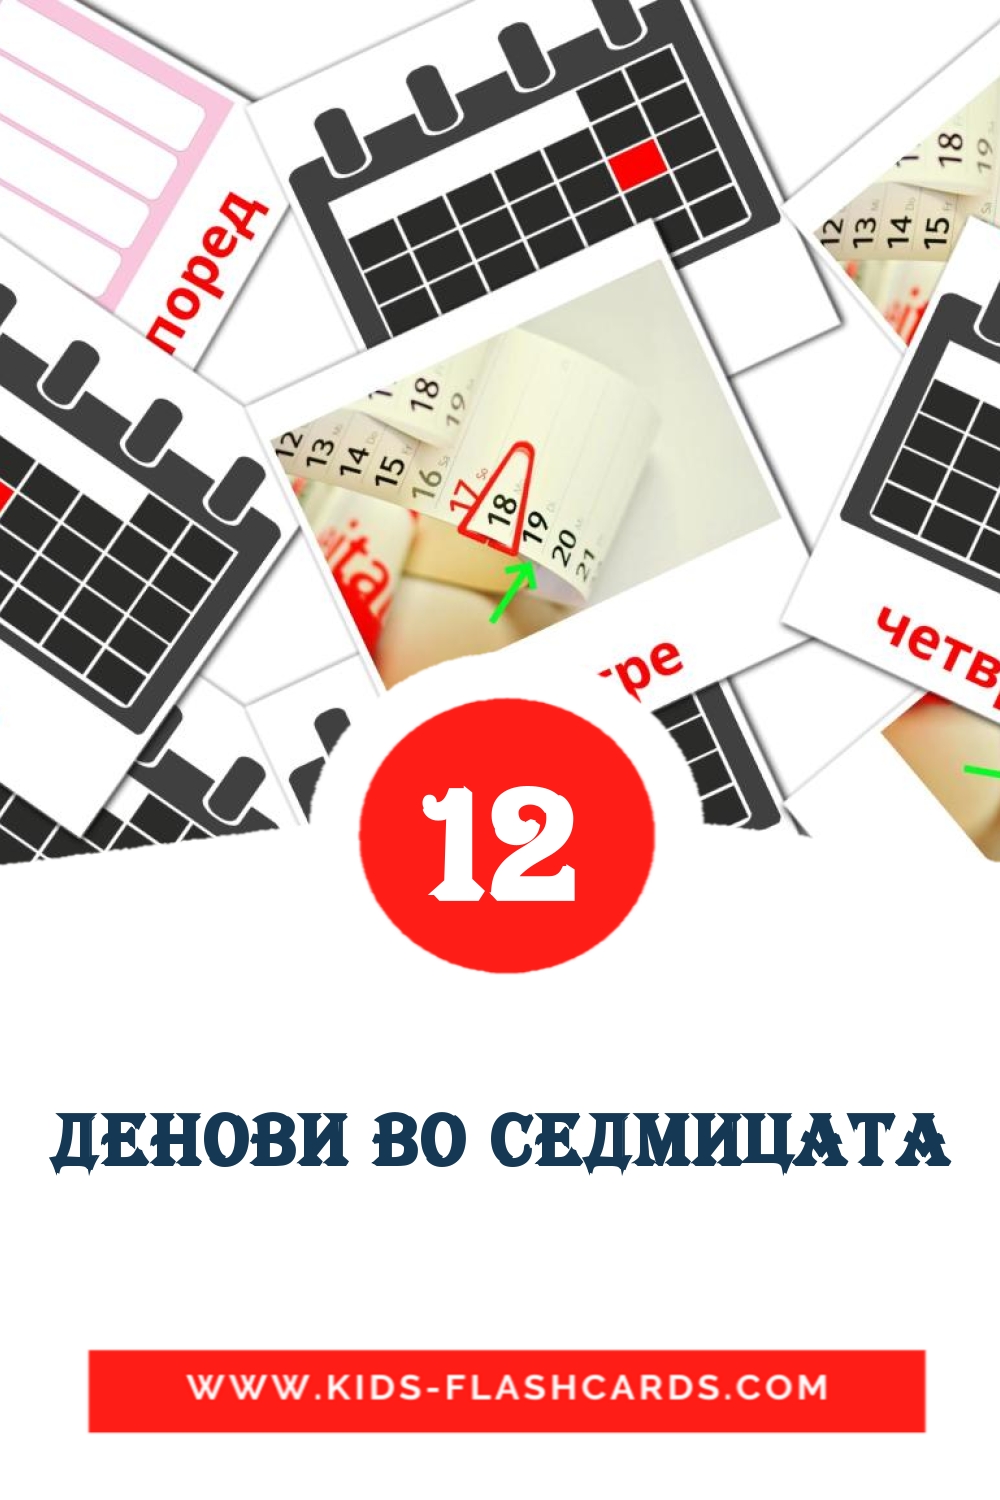 12 Cartões com Imagens de Денови во седмицата para Jardim de Infância em macedônia